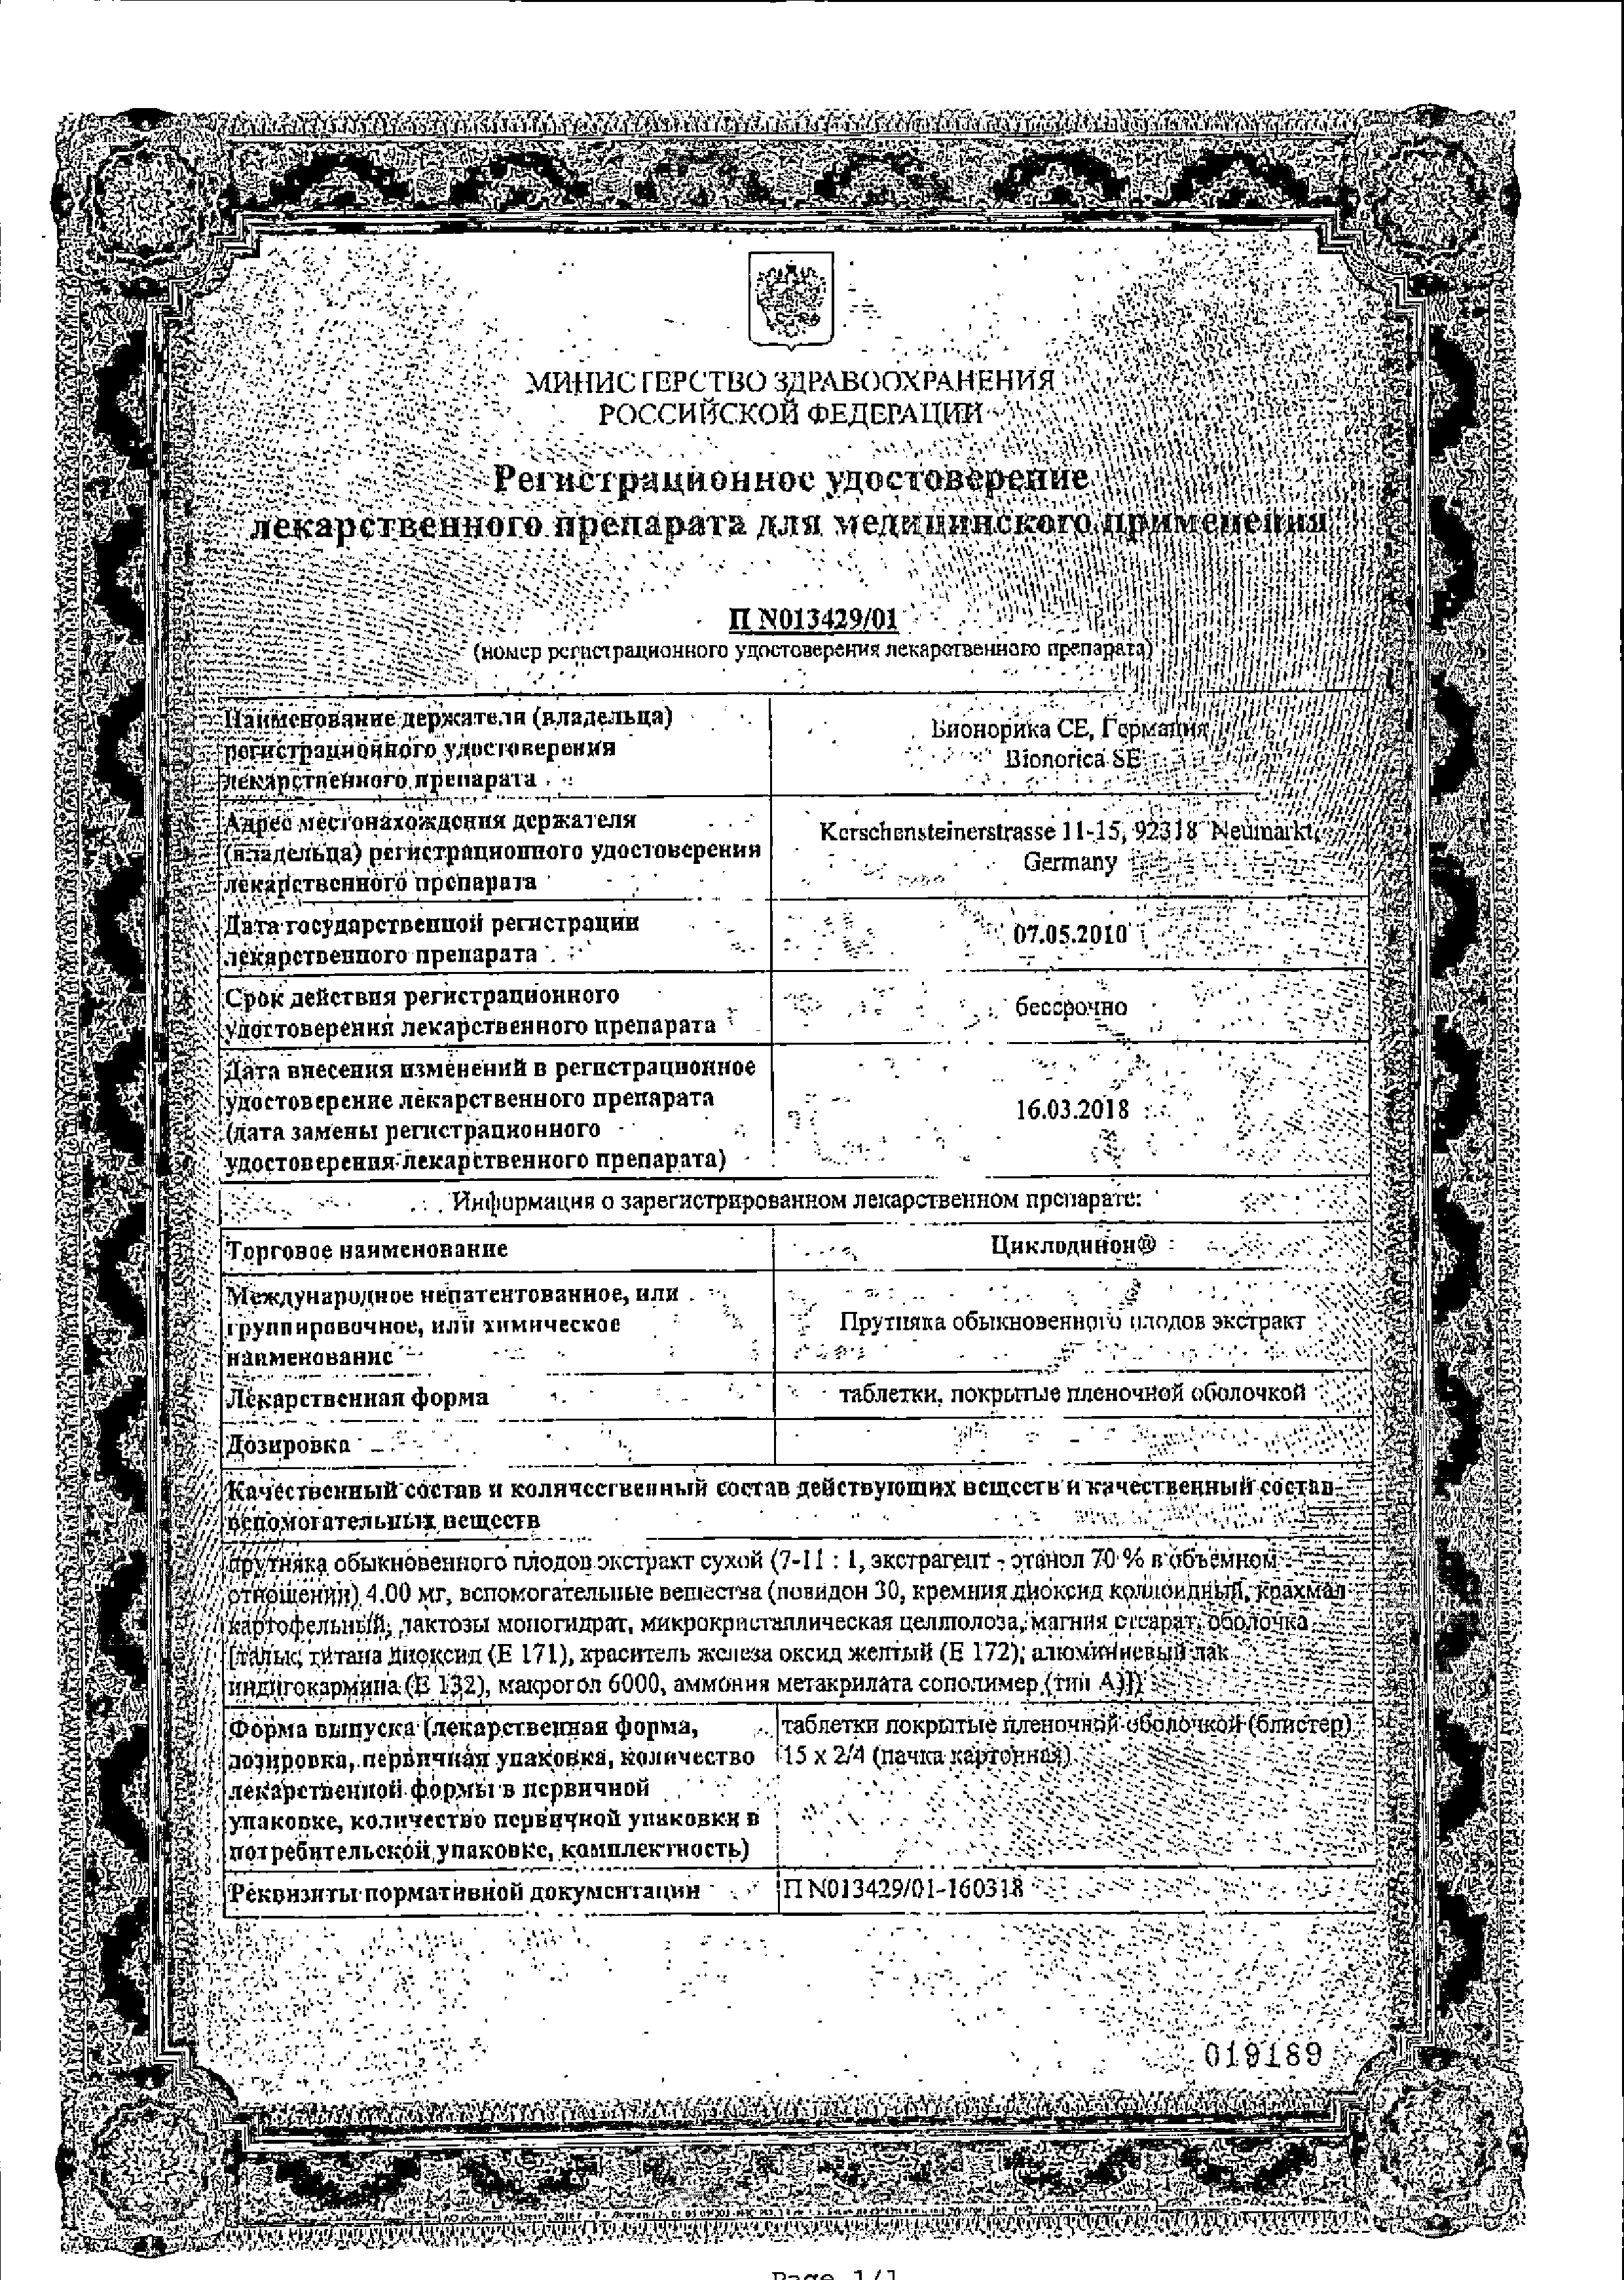 Циклодинон сертификат